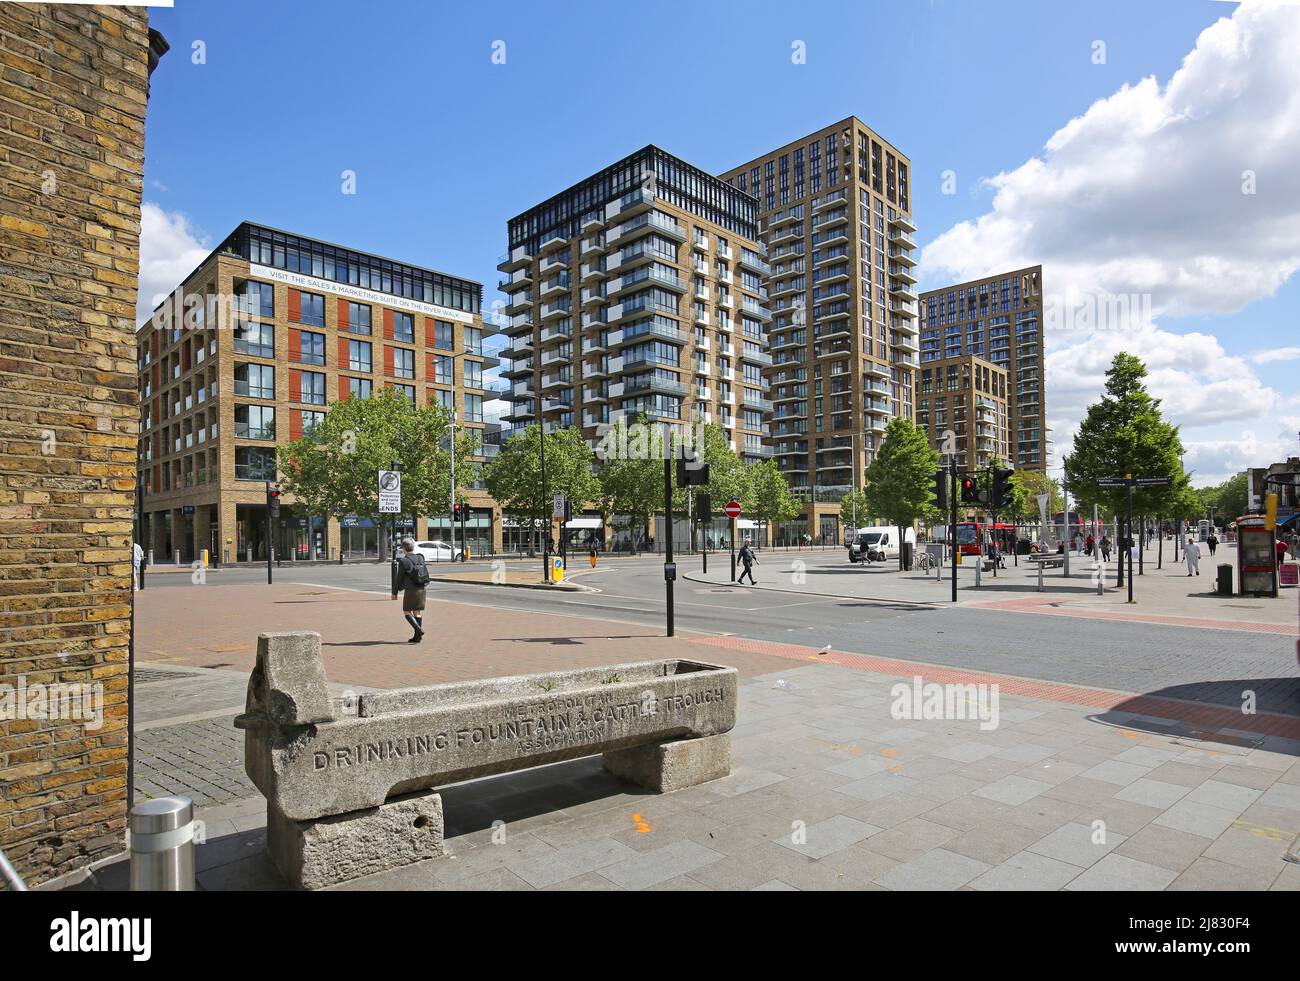 Nouveau développement résidentiel sur Beresford Street, Woolwich, Londres, Royaume-Uni. Construit autour de la nouvelle station Elizabeth Line (Crossrail). Banque D'Images